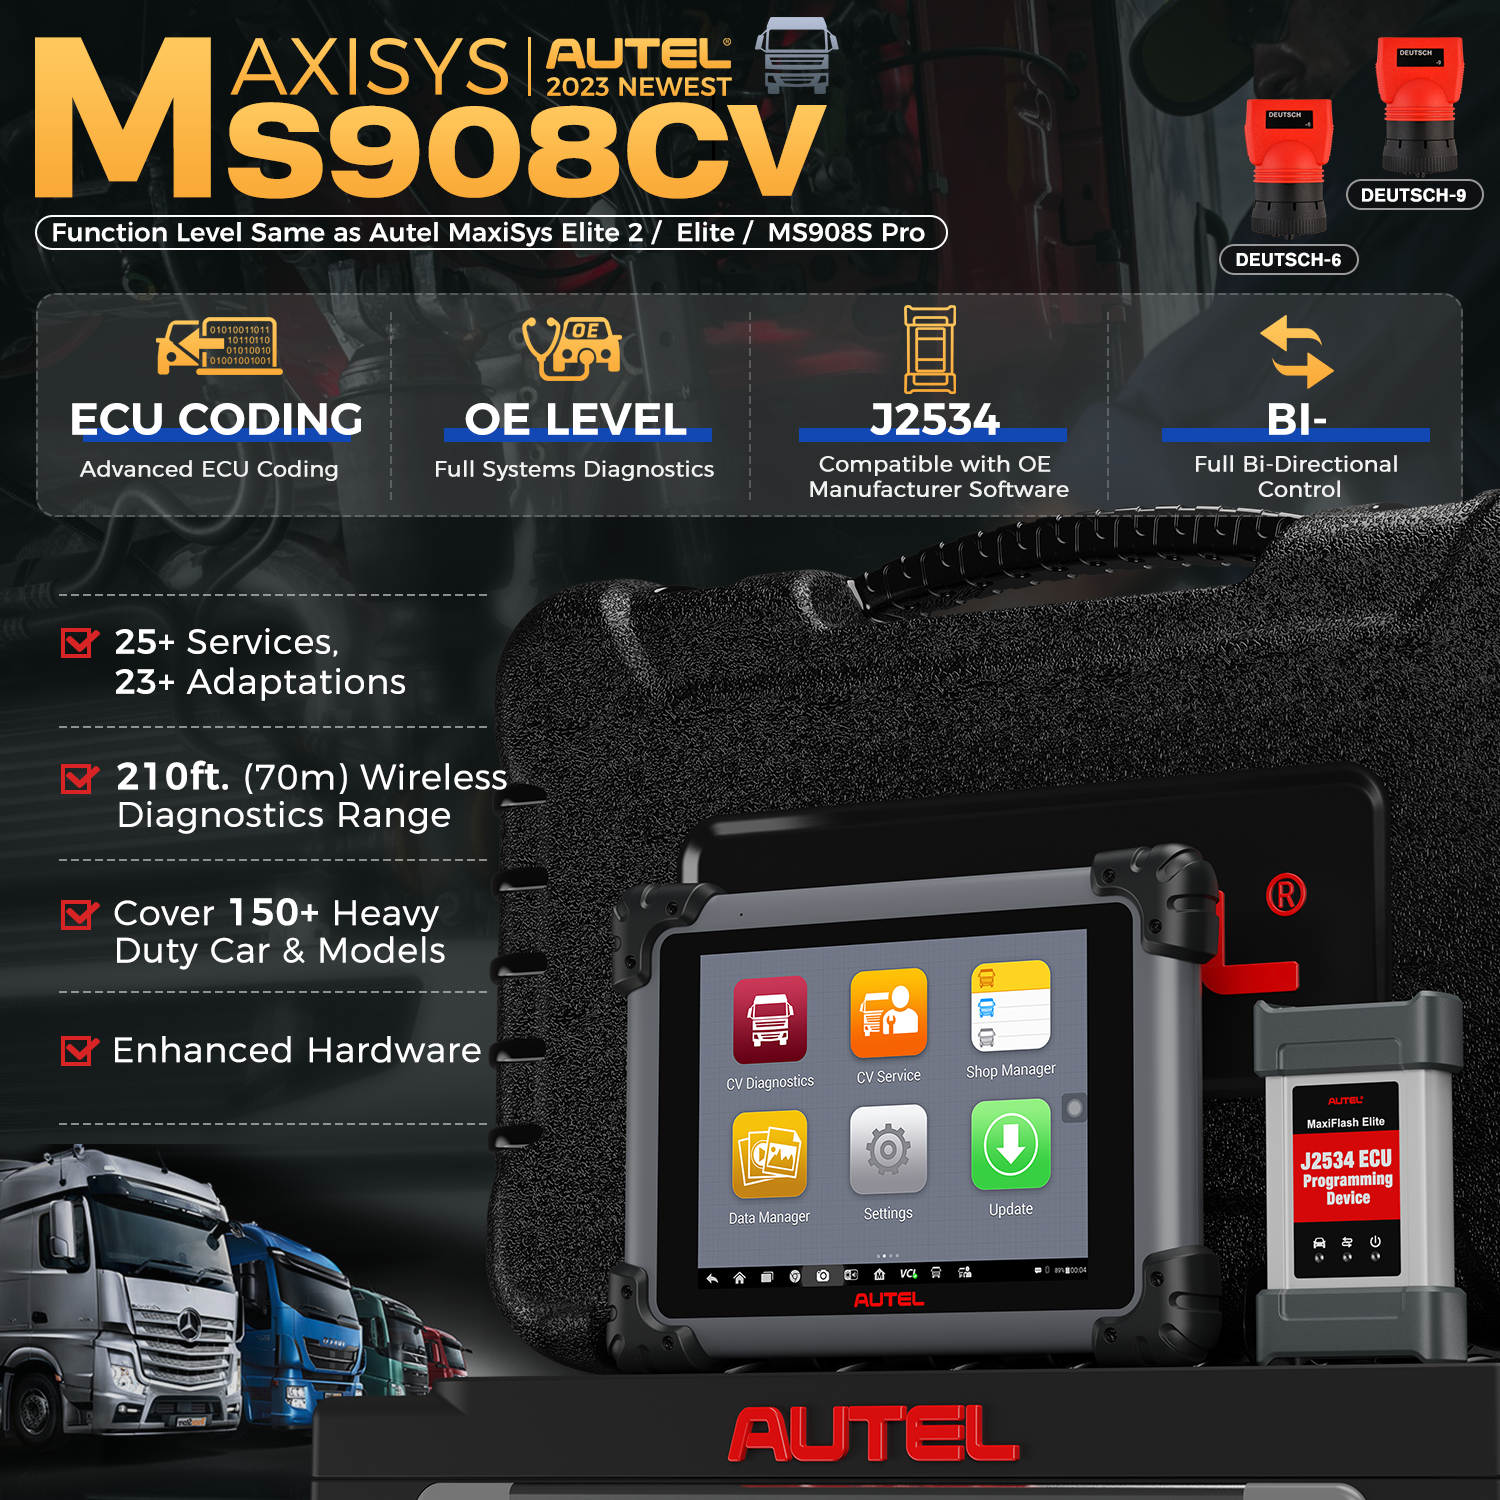 Autel MS908CV features